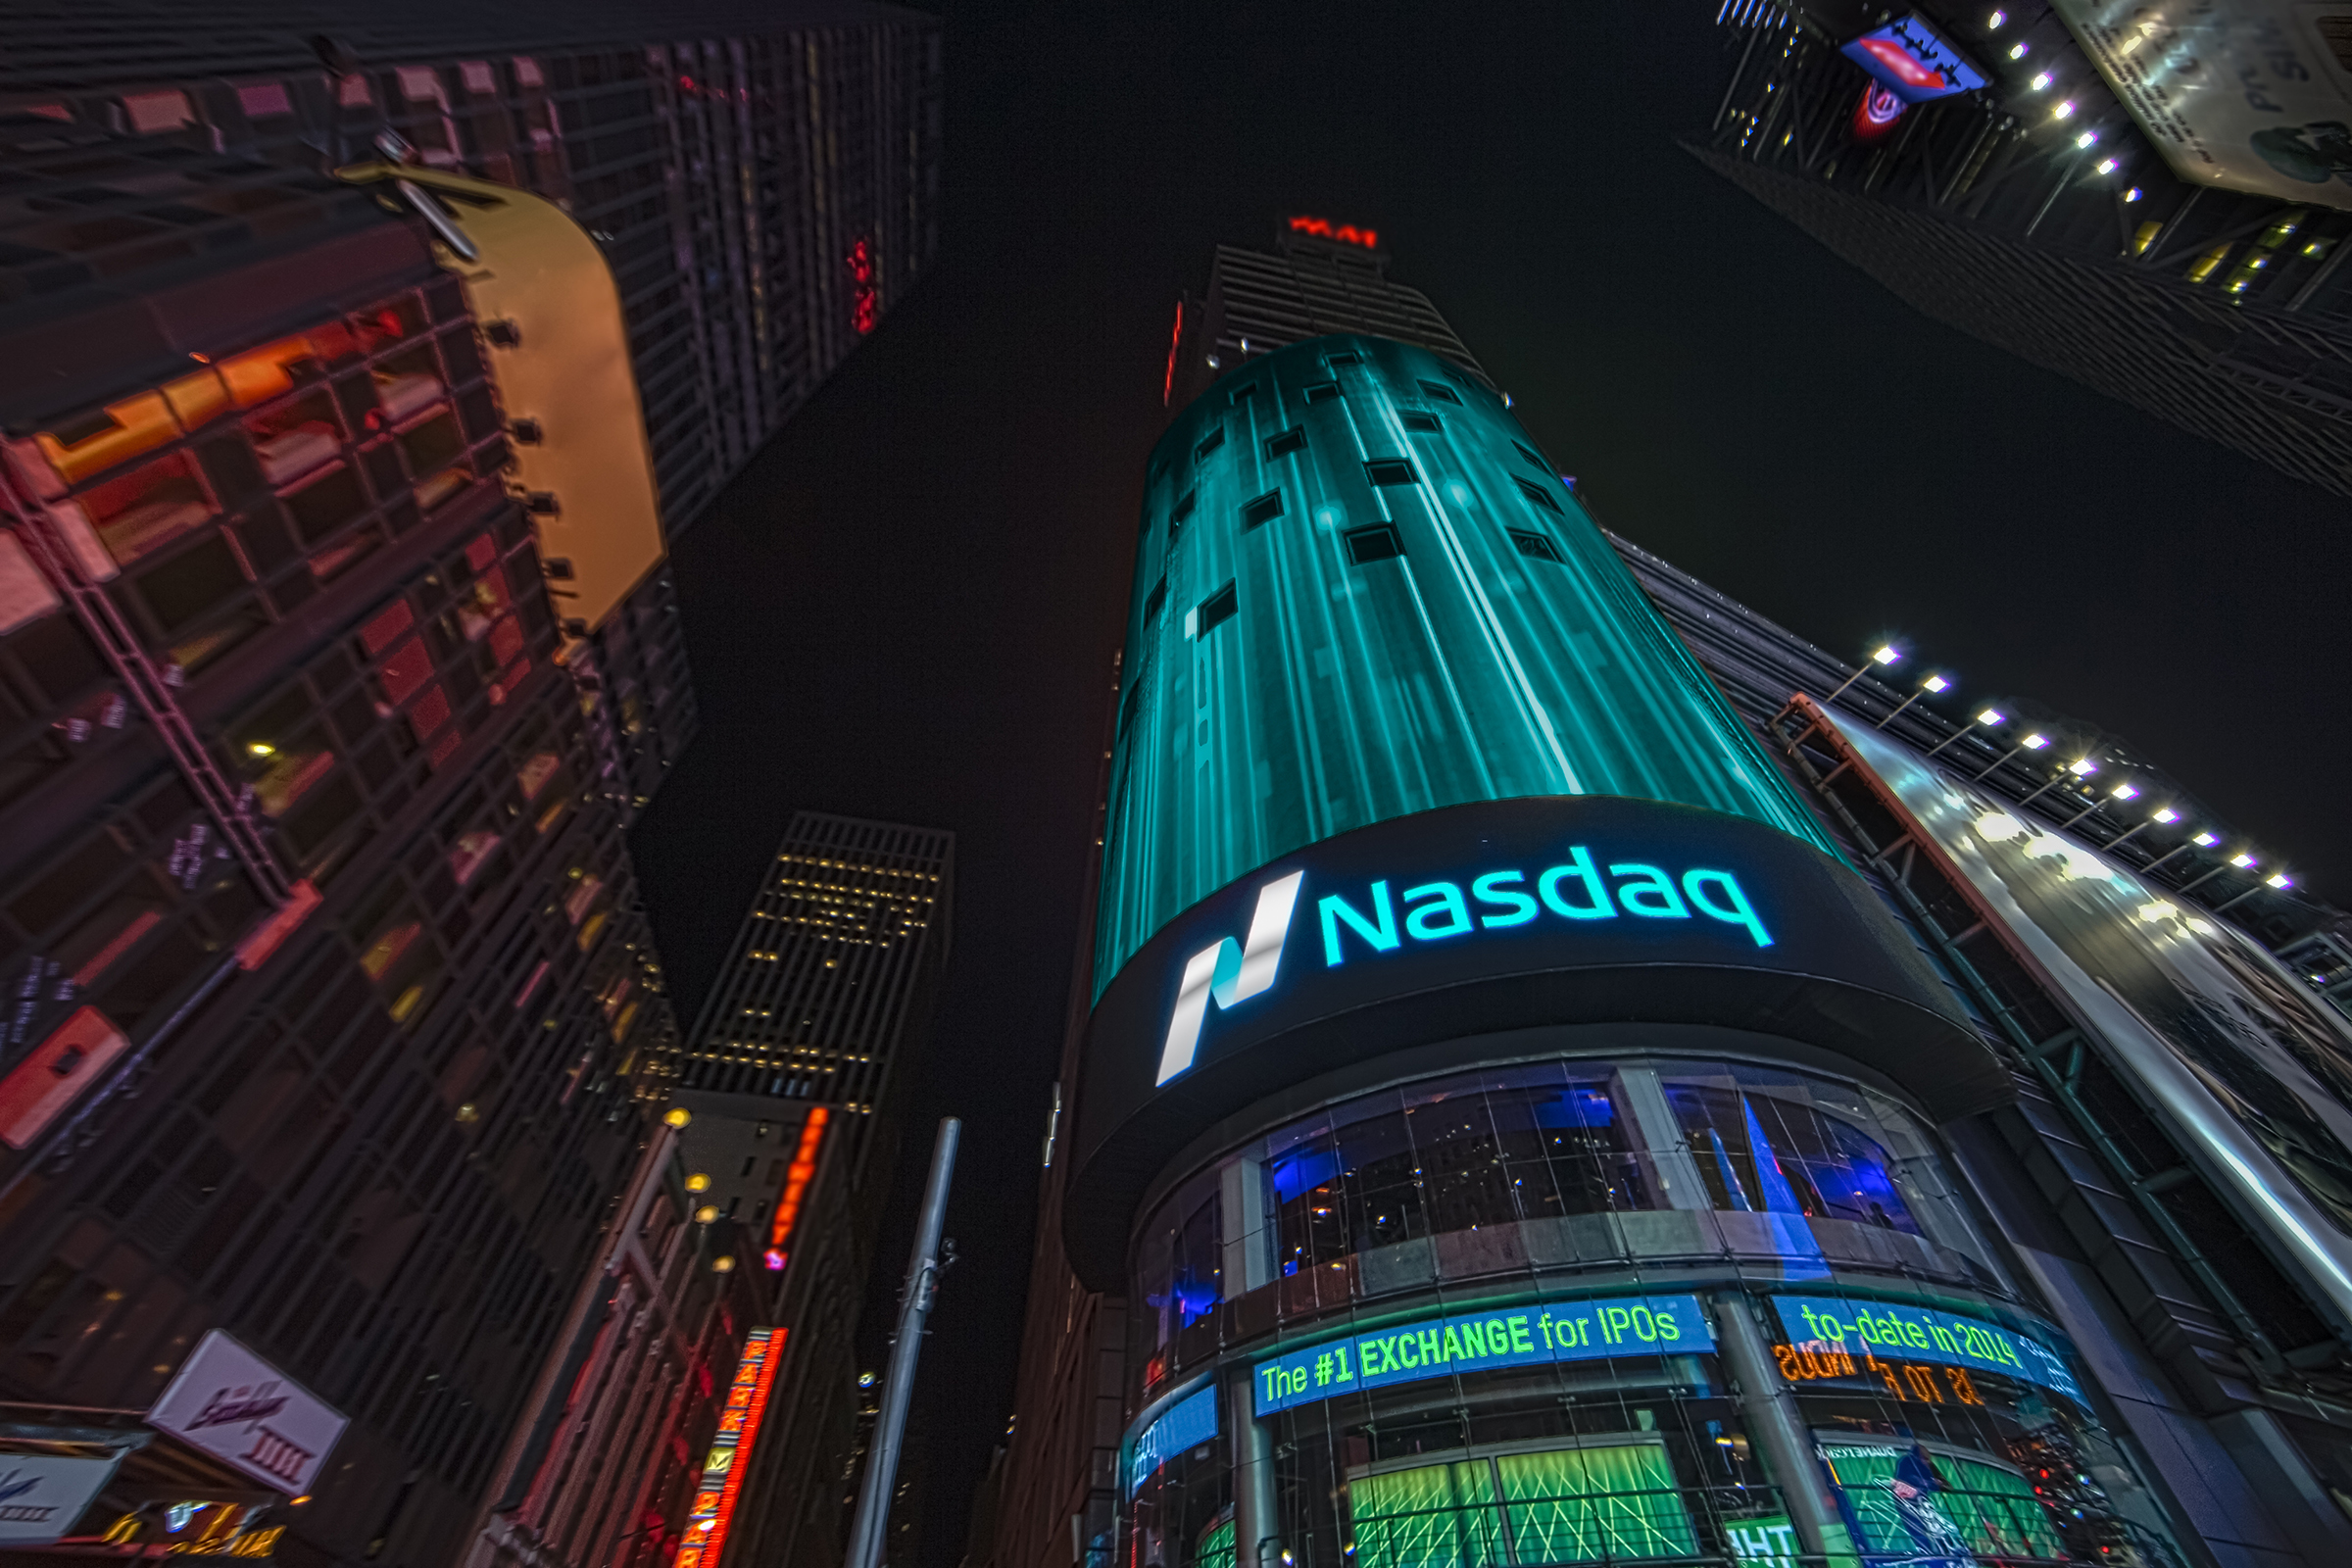 NASDAQ towers